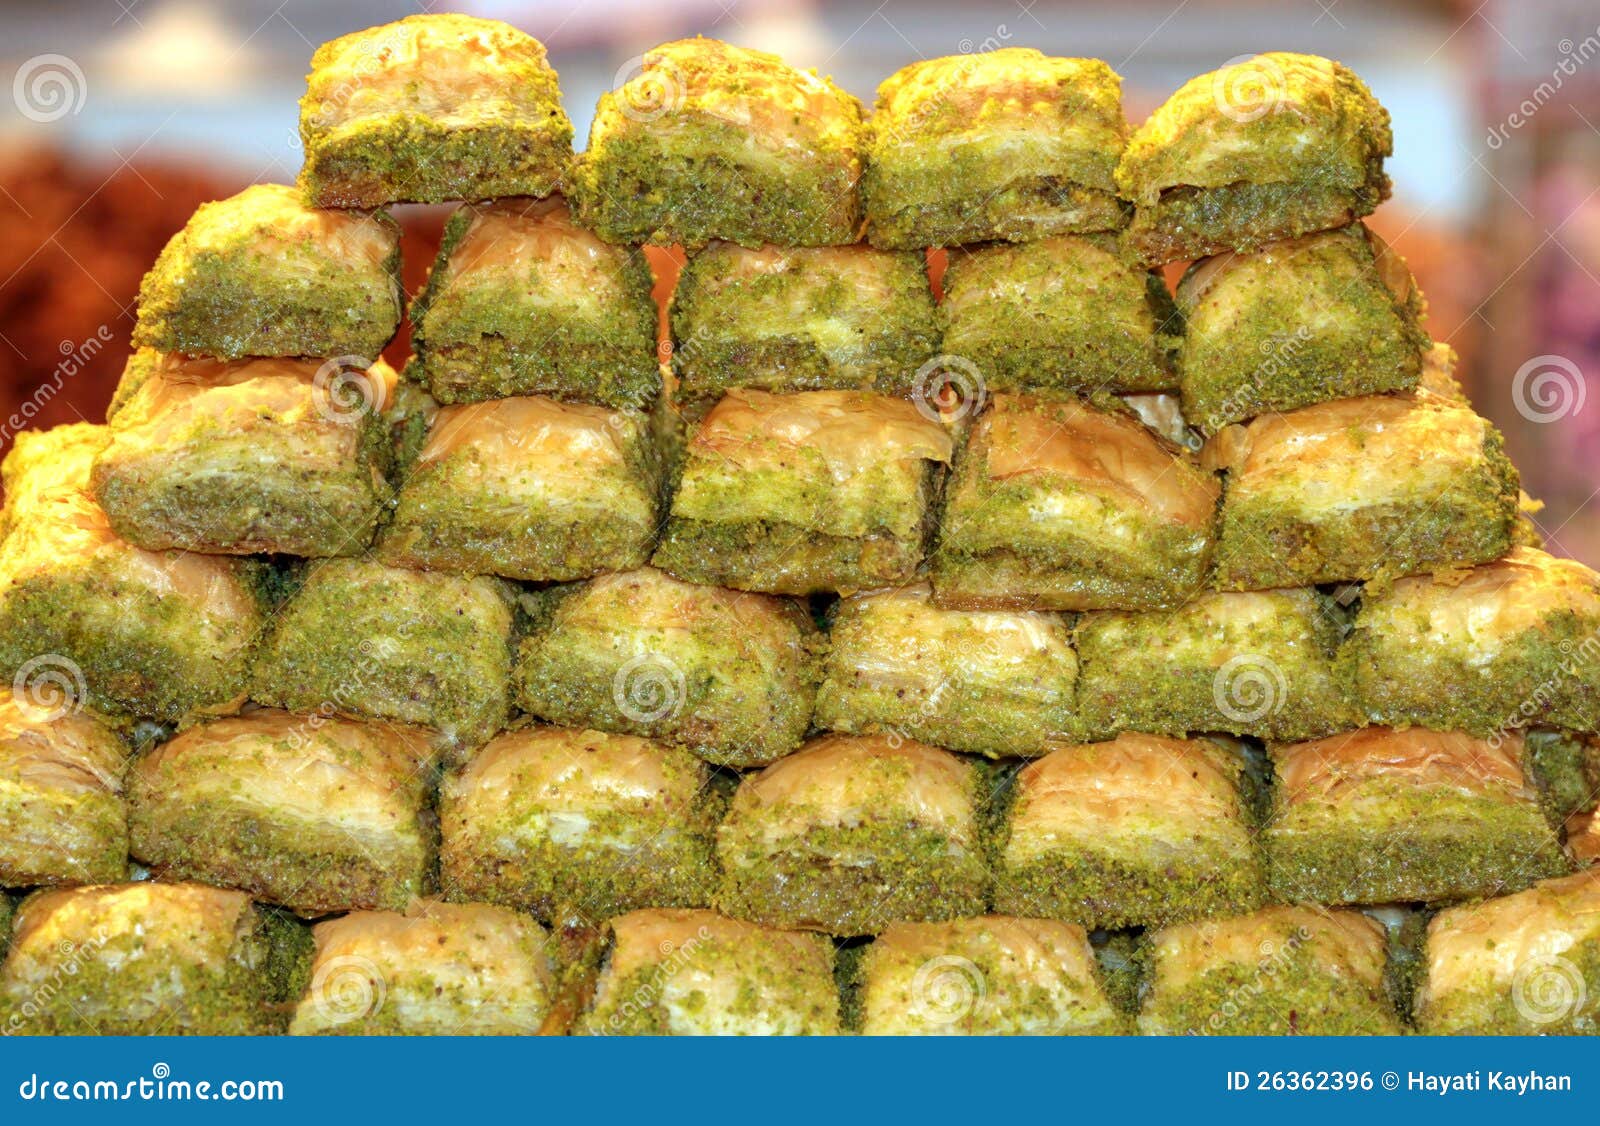 stacked turkish sweet baklava